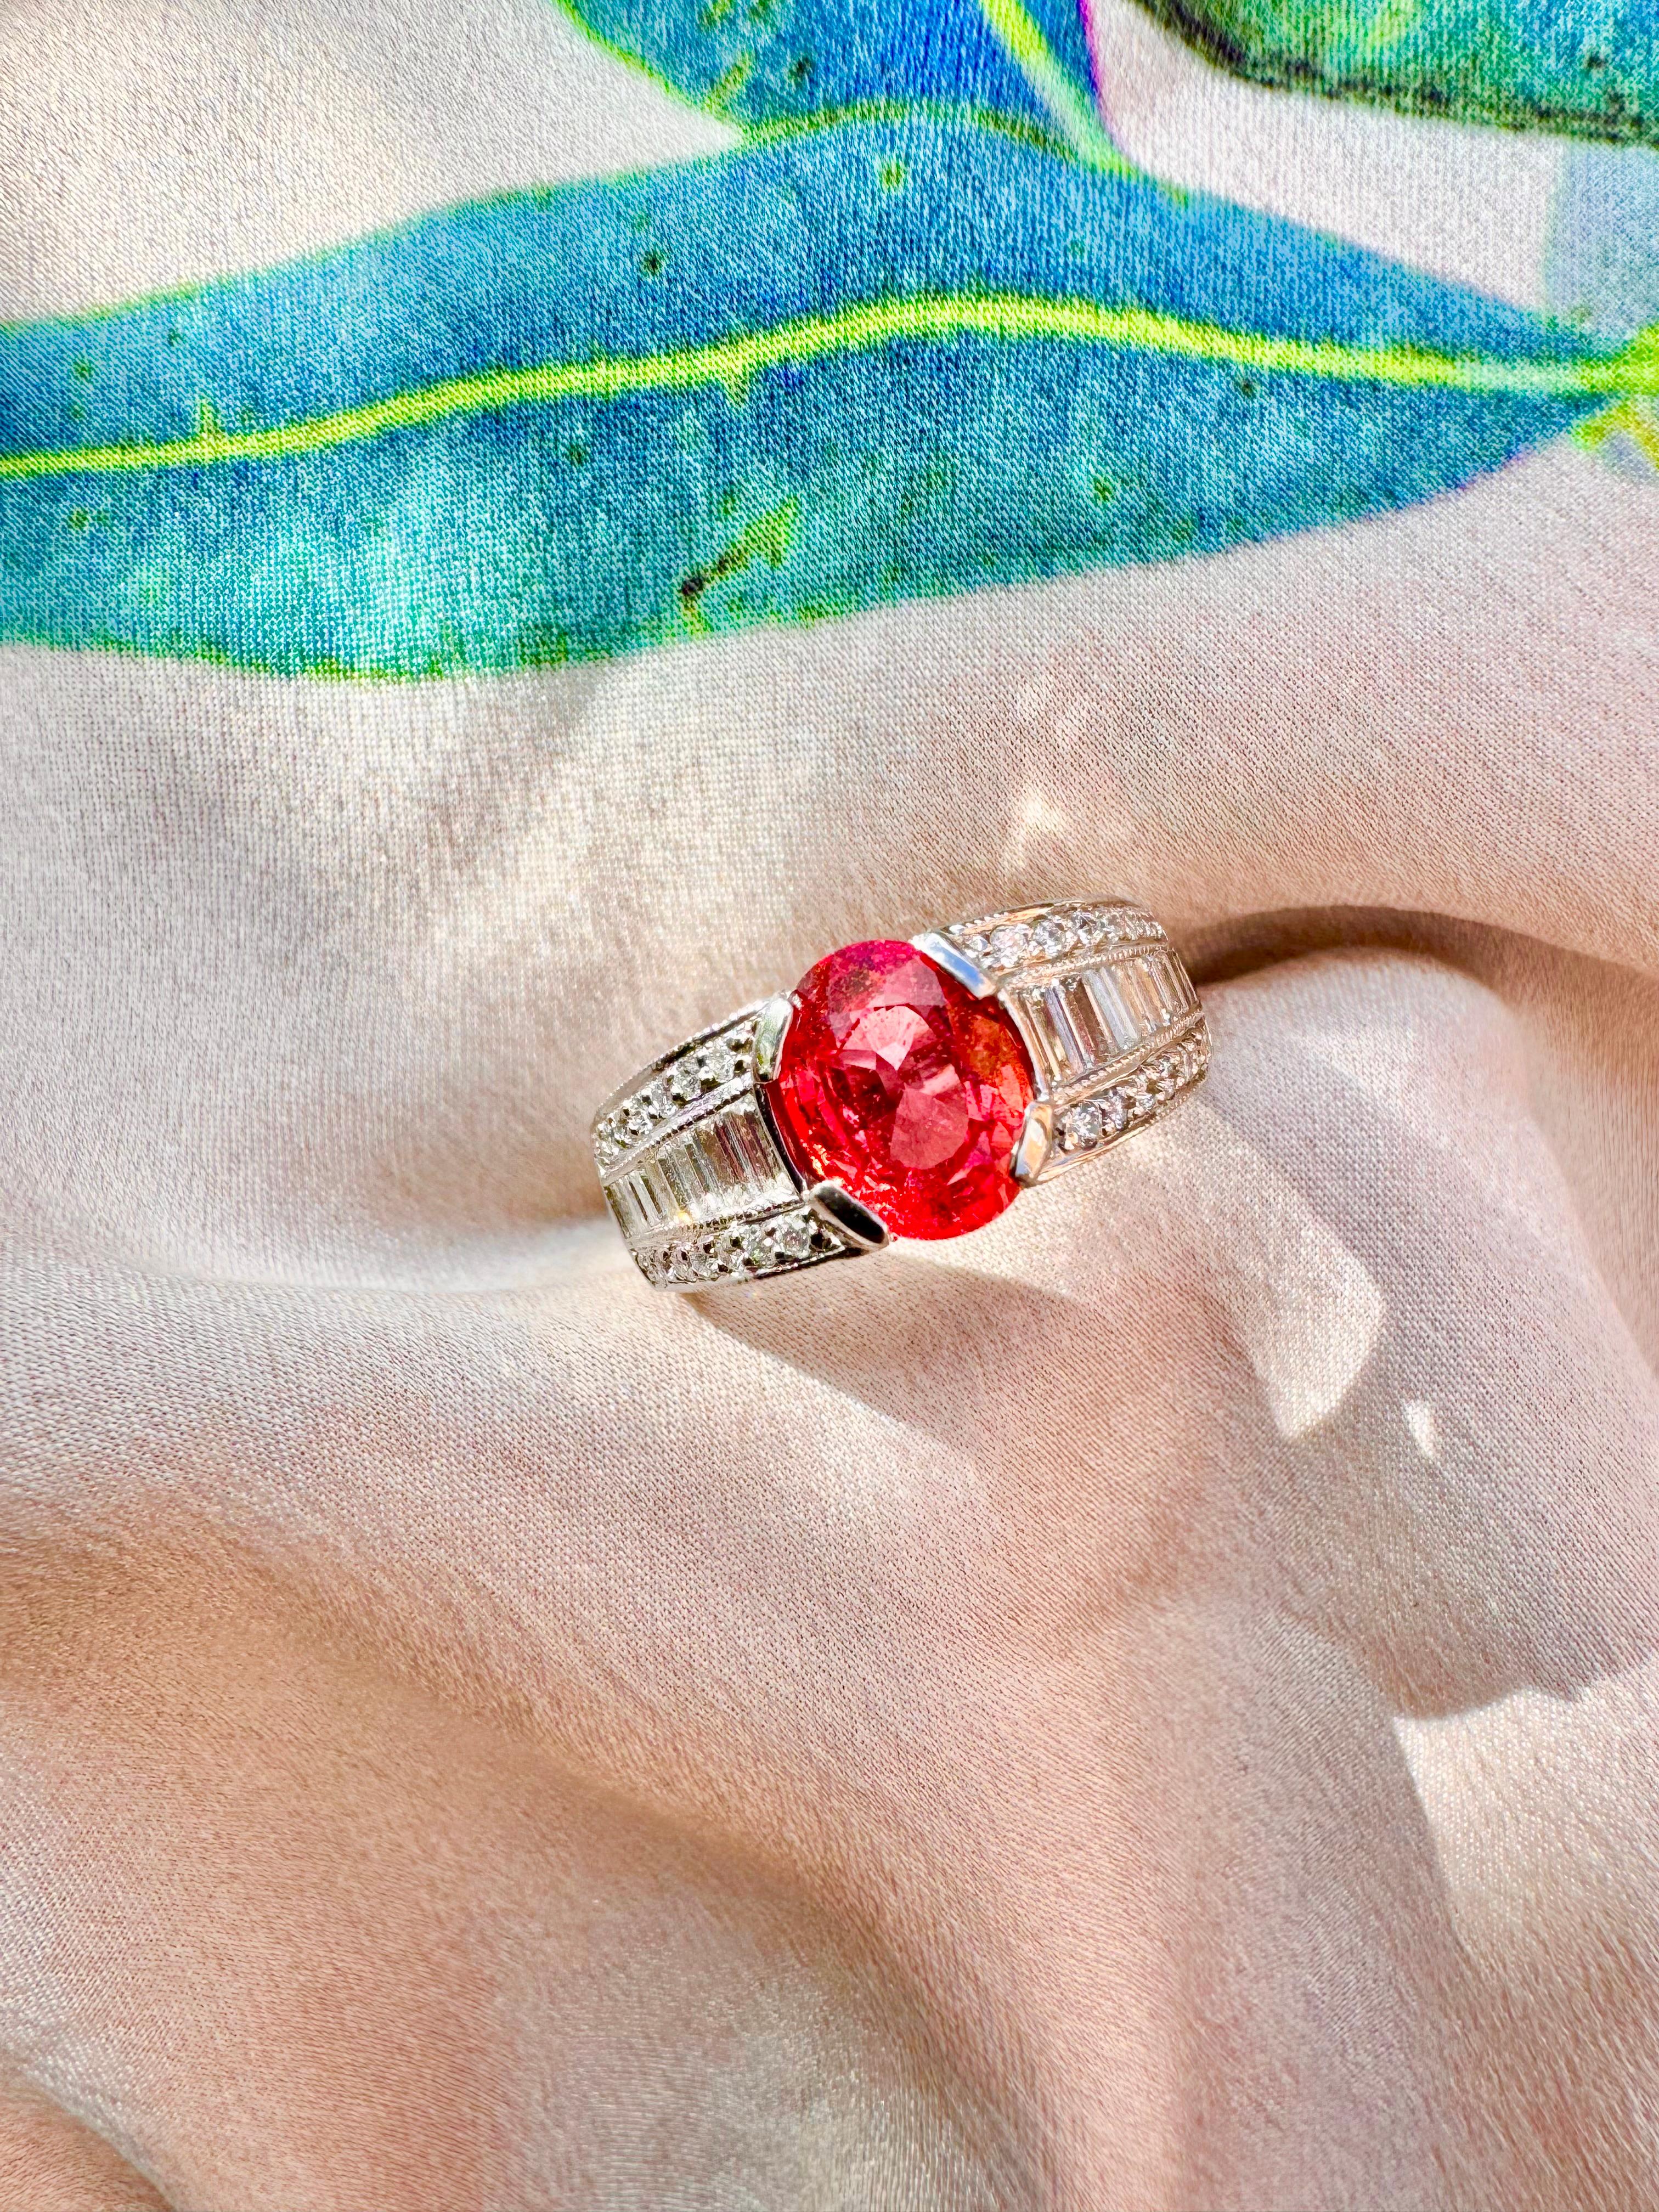 Ein glühender und feurig funkelnder Vintage-Ring aus Padparadscha-Saphir und Diamant, gefasst in einer einzigartigen Platinfassung. 

Spezifikationen: 
Gewicht des Padparadscha: 1,88 Karat
Diamanten Gewichte: 1,04 Karat 
Metall-Typ: Platin